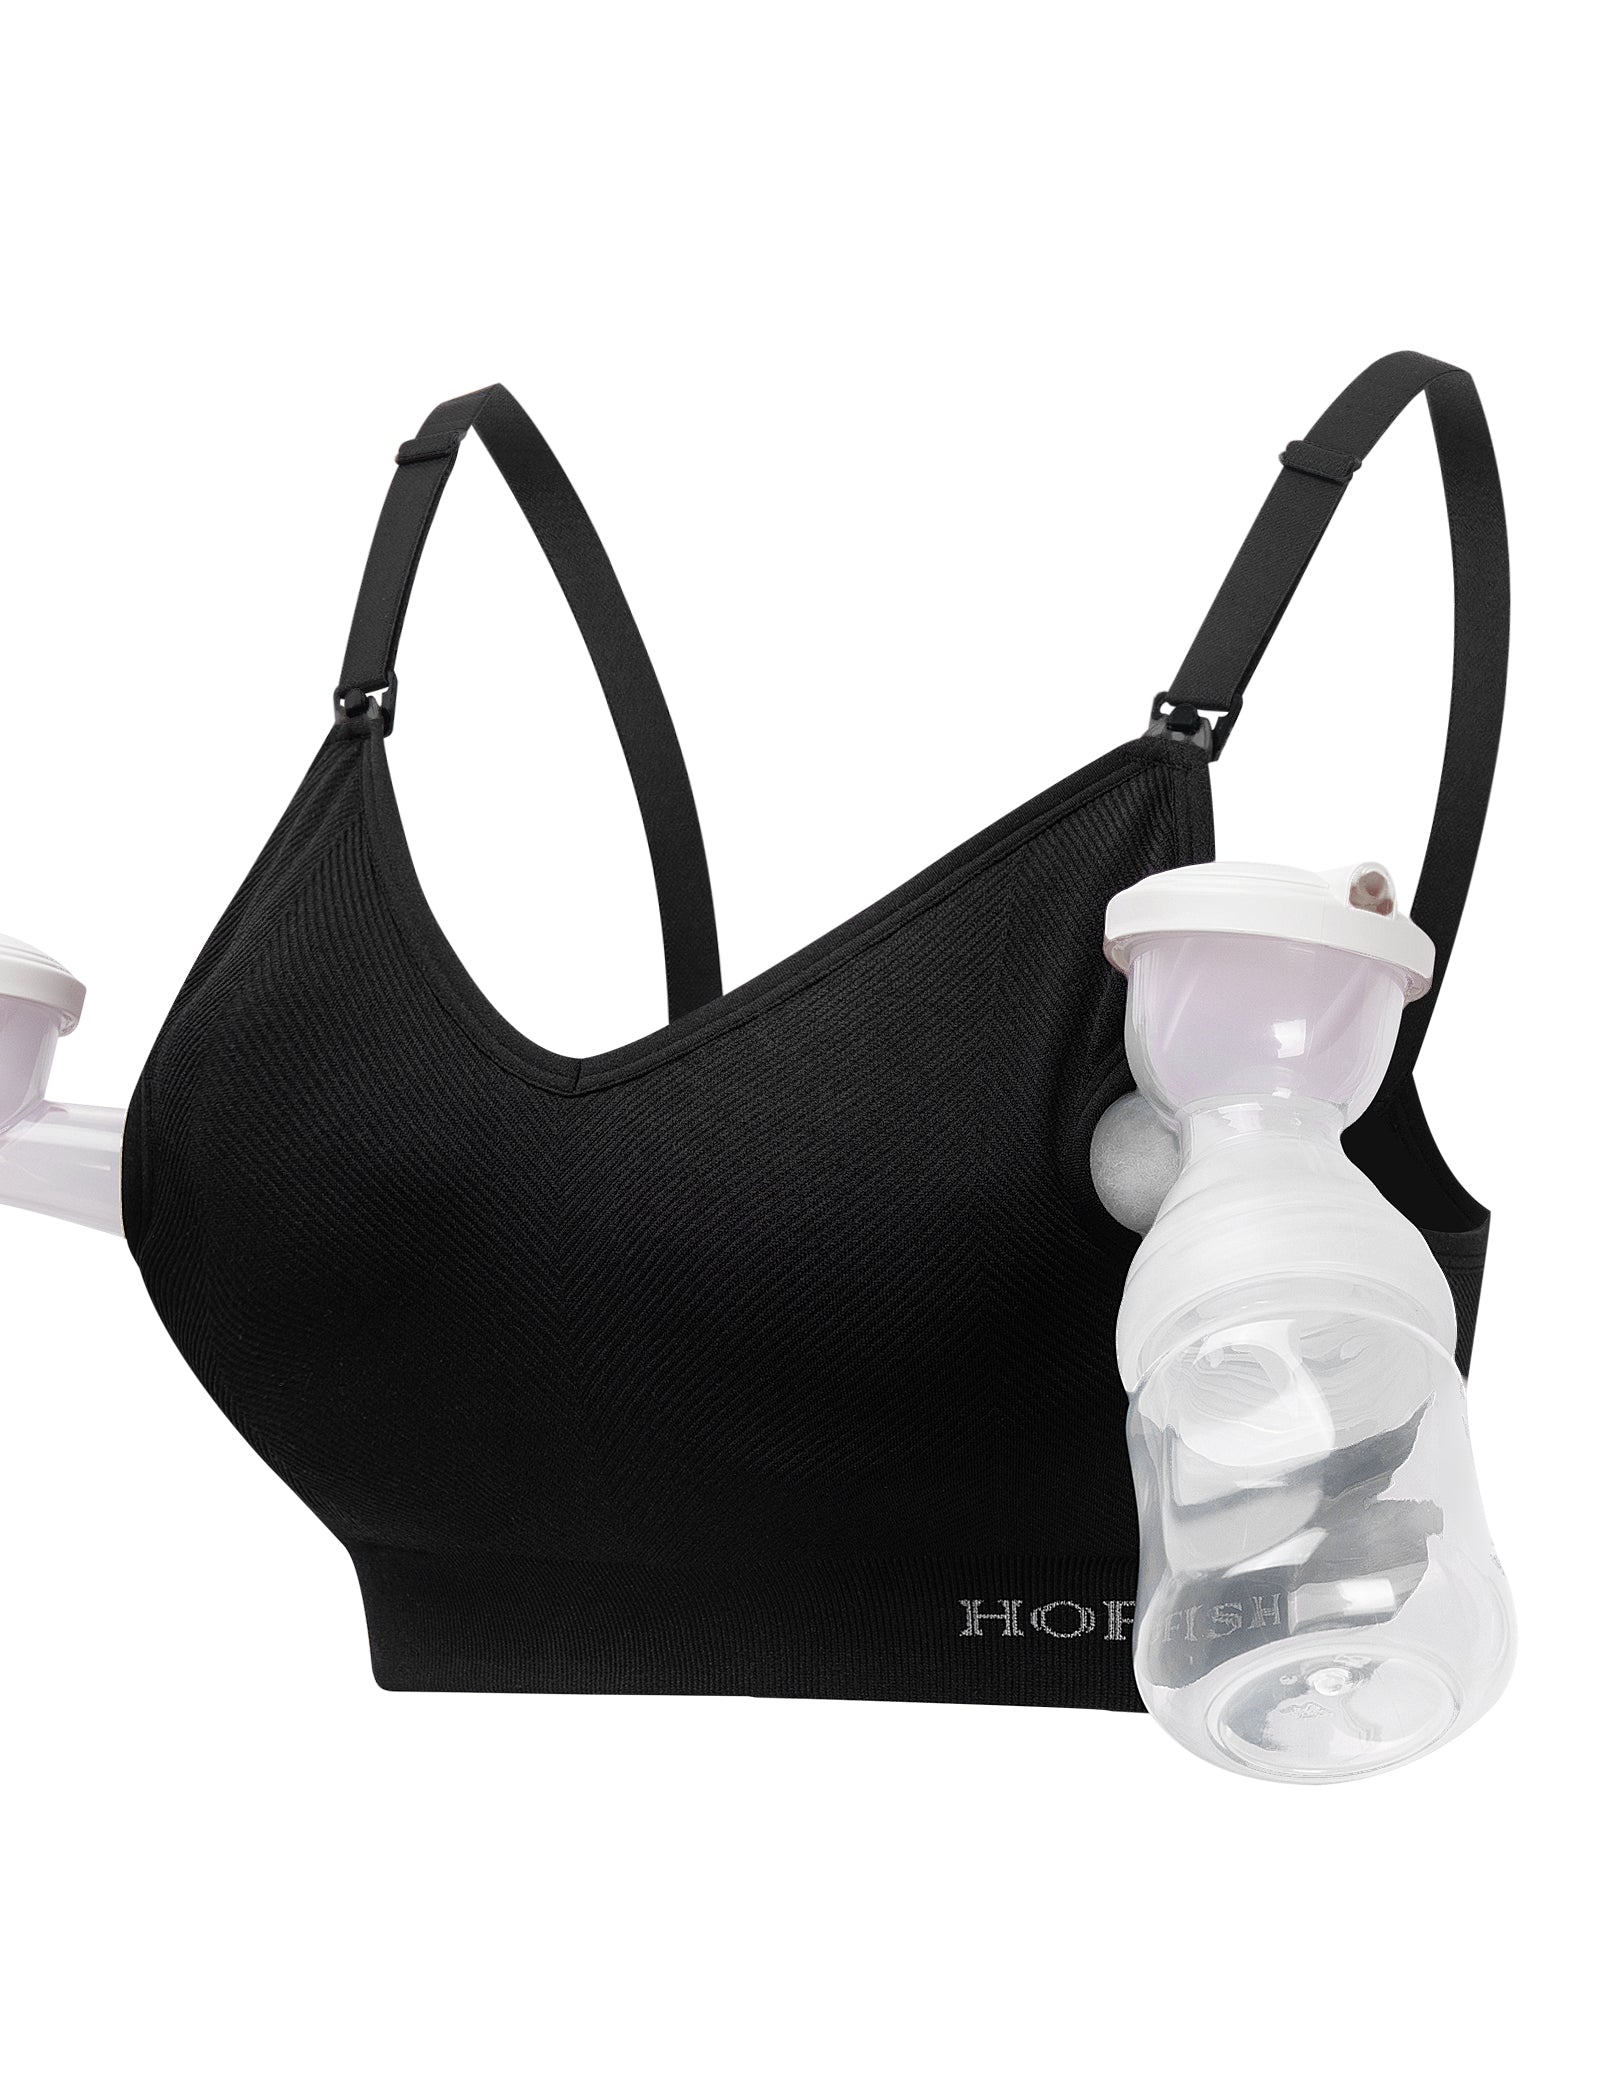 Medium, Black) - Hands Free Pumping Bra, Momcozy Adjustable Breast